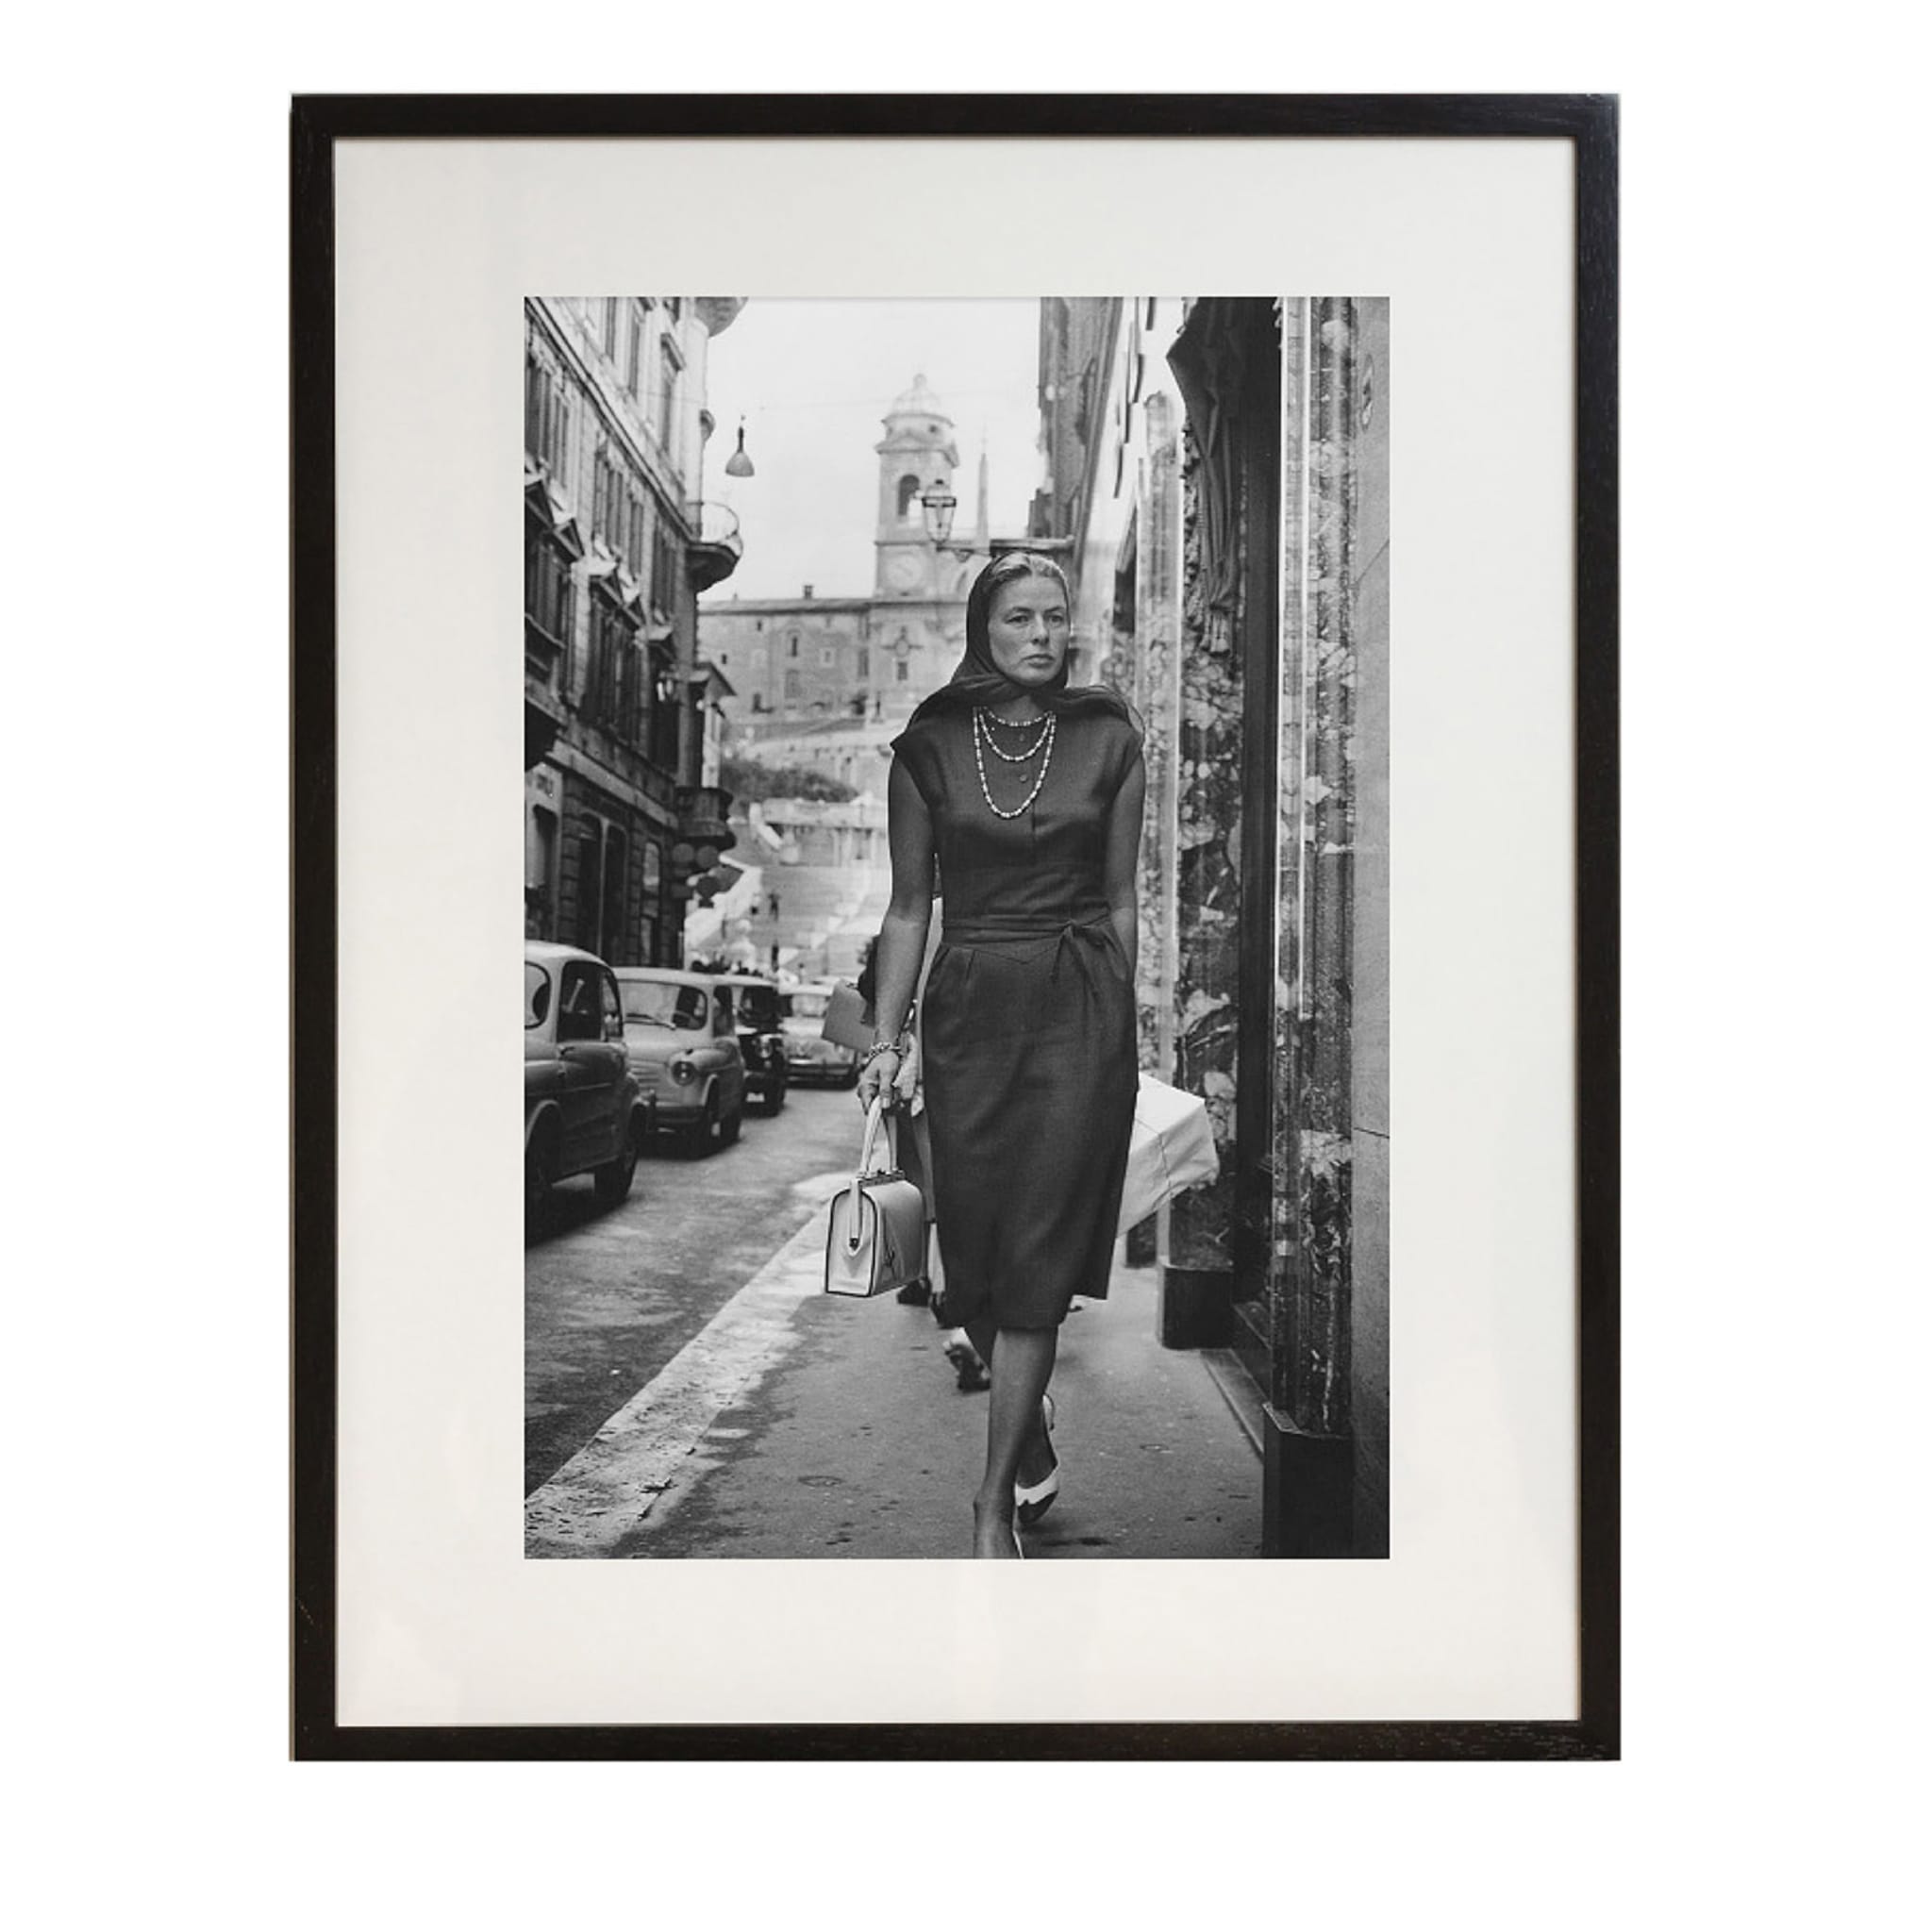 Ingrid Bergman In Rome Framed Print by Keystone - Main view